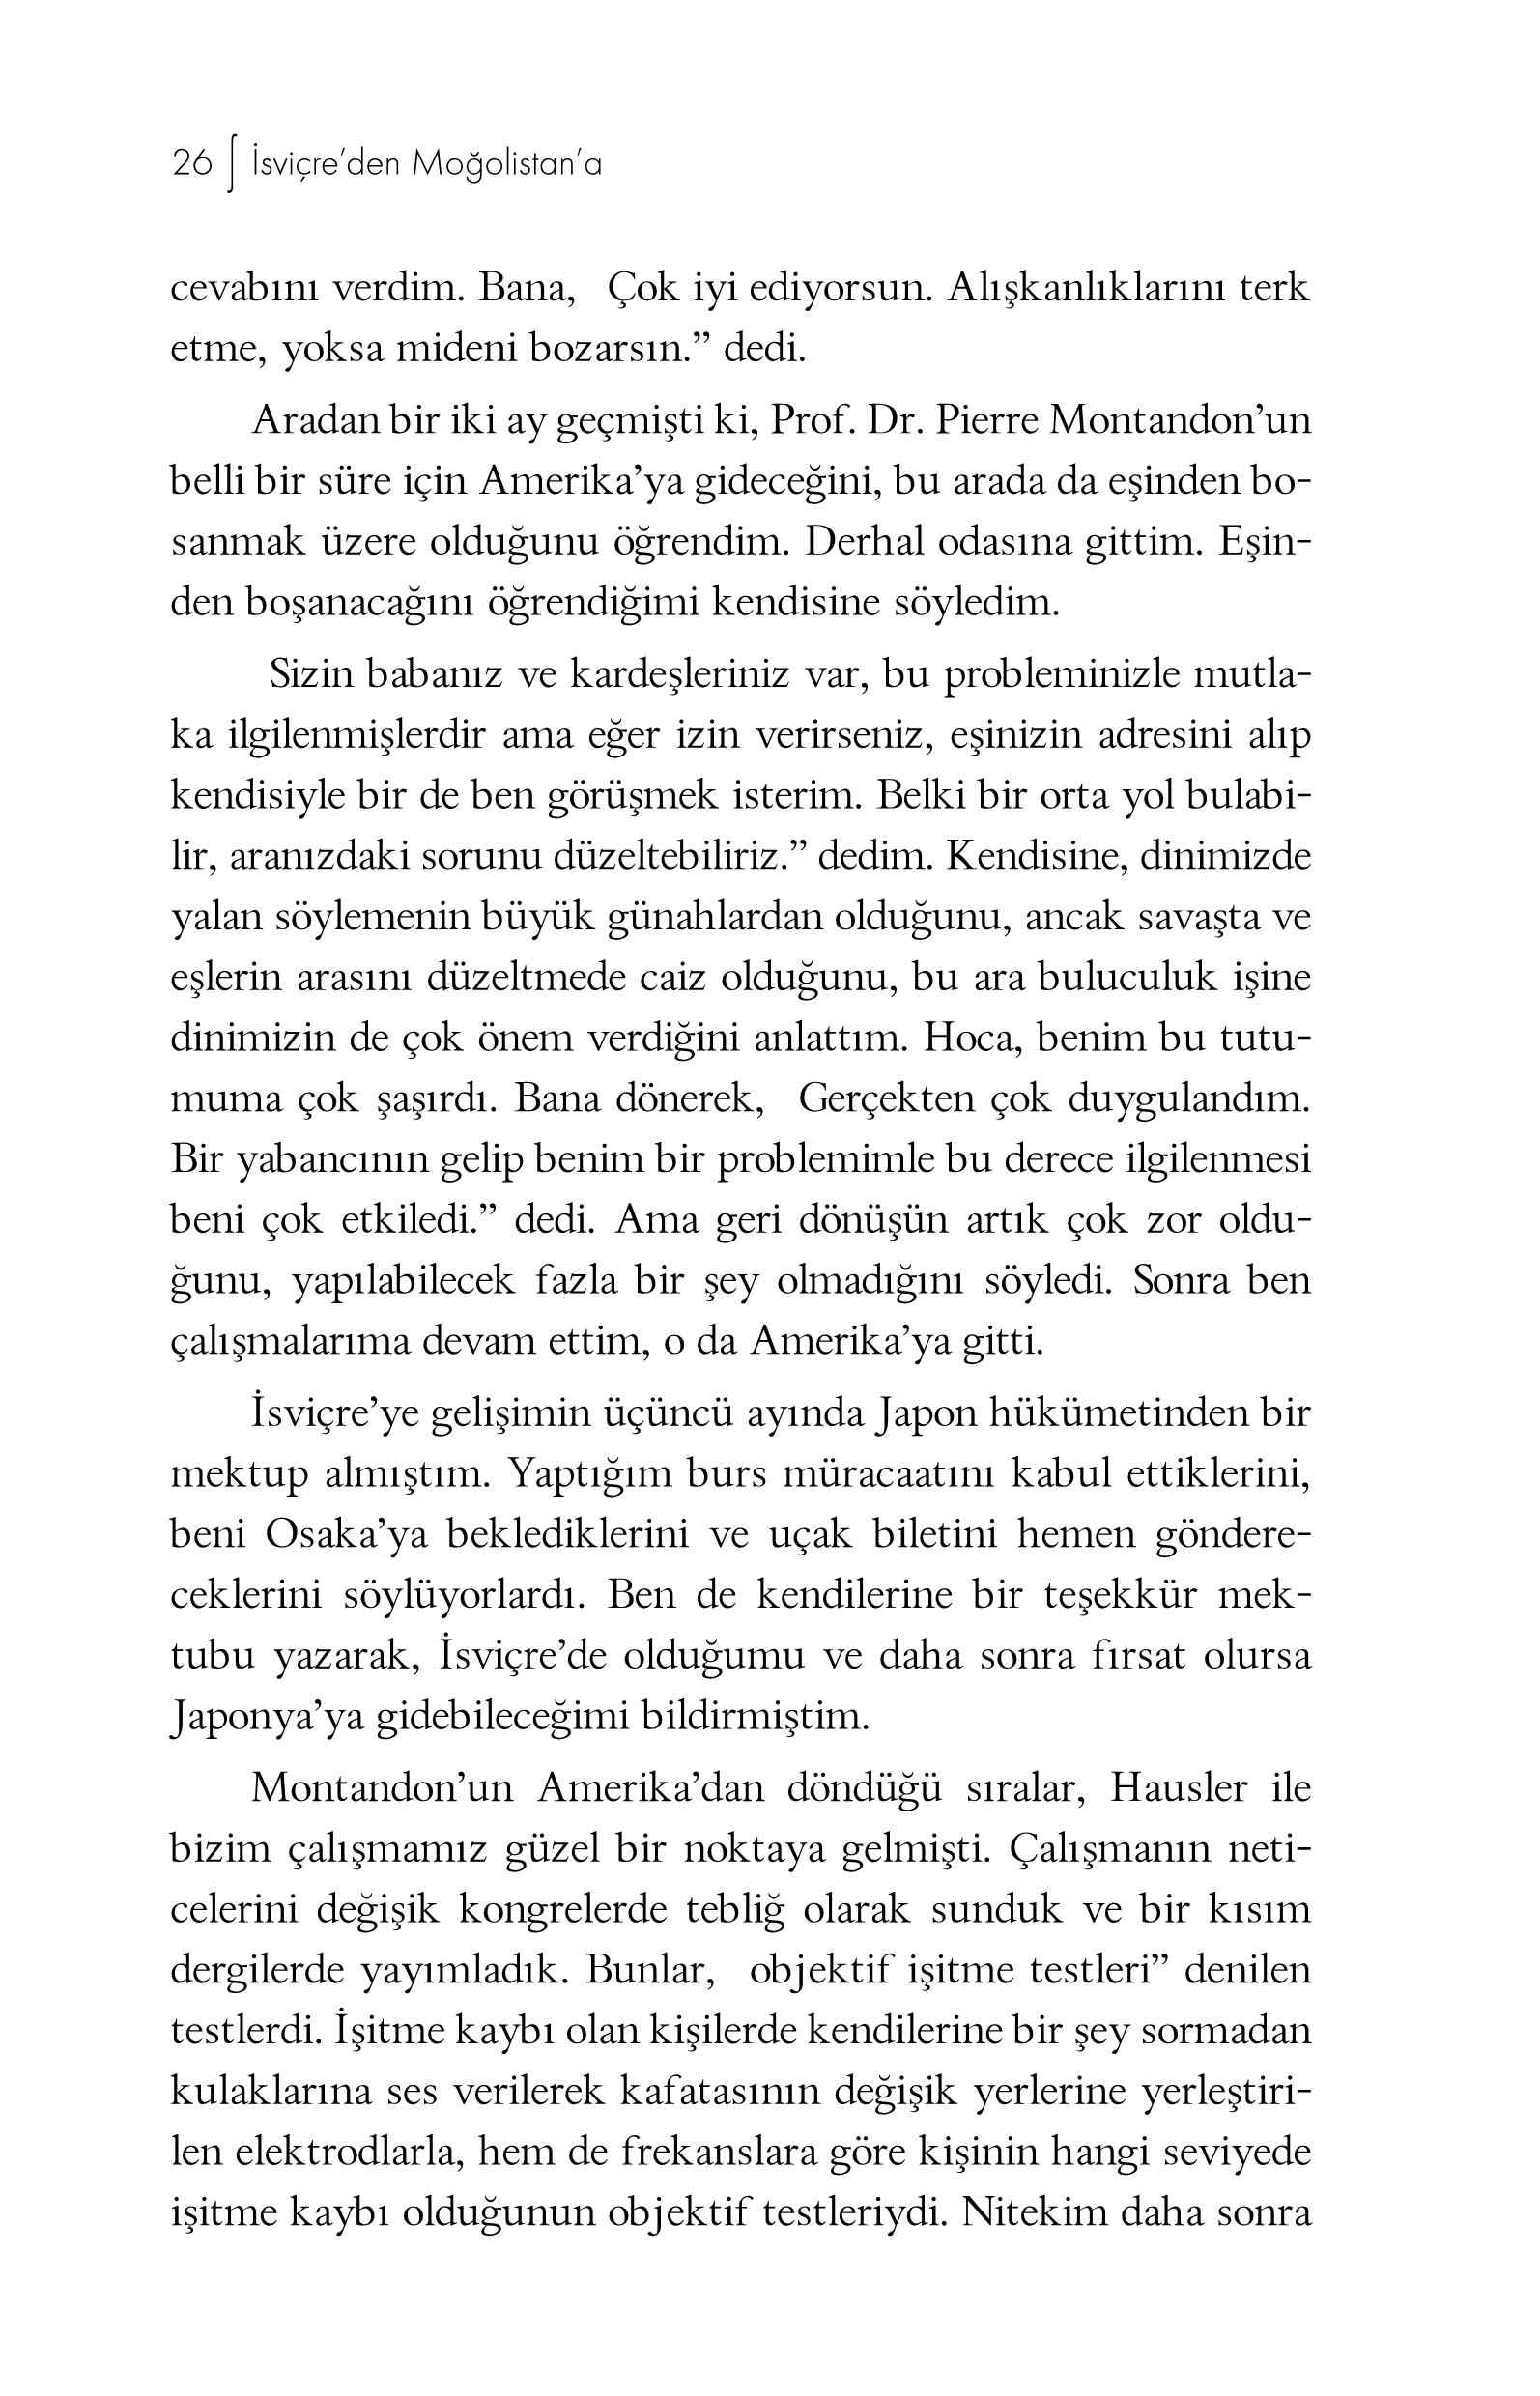 Akasya Hikayeleri-6 - Serif Ali Tekalan - Isvicreden Mogolistana - UfukYayinlari.pdf, 236-Sayfa 